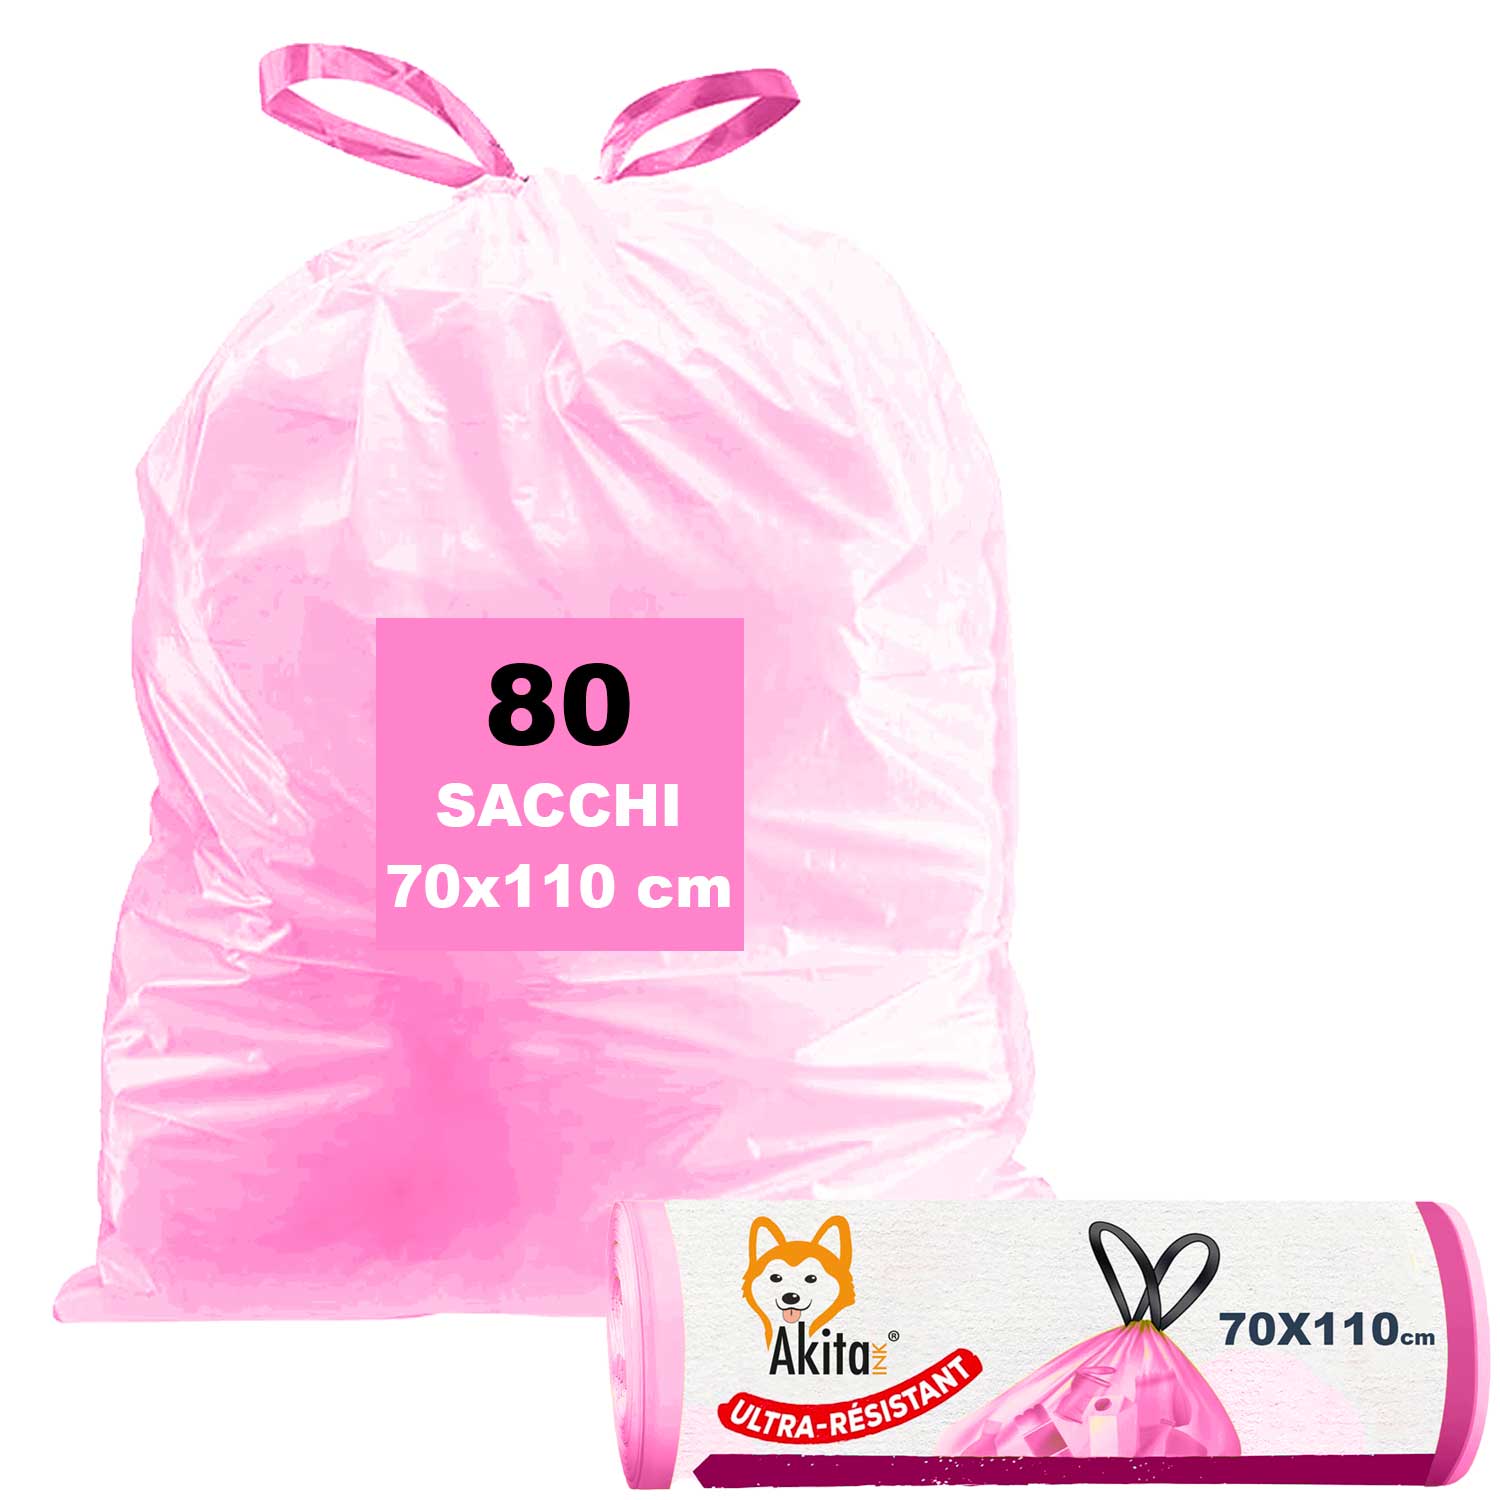 Akitaink, 80 sacchi per pattumiera 70x110 con manici rosa alta resistenza, 110l